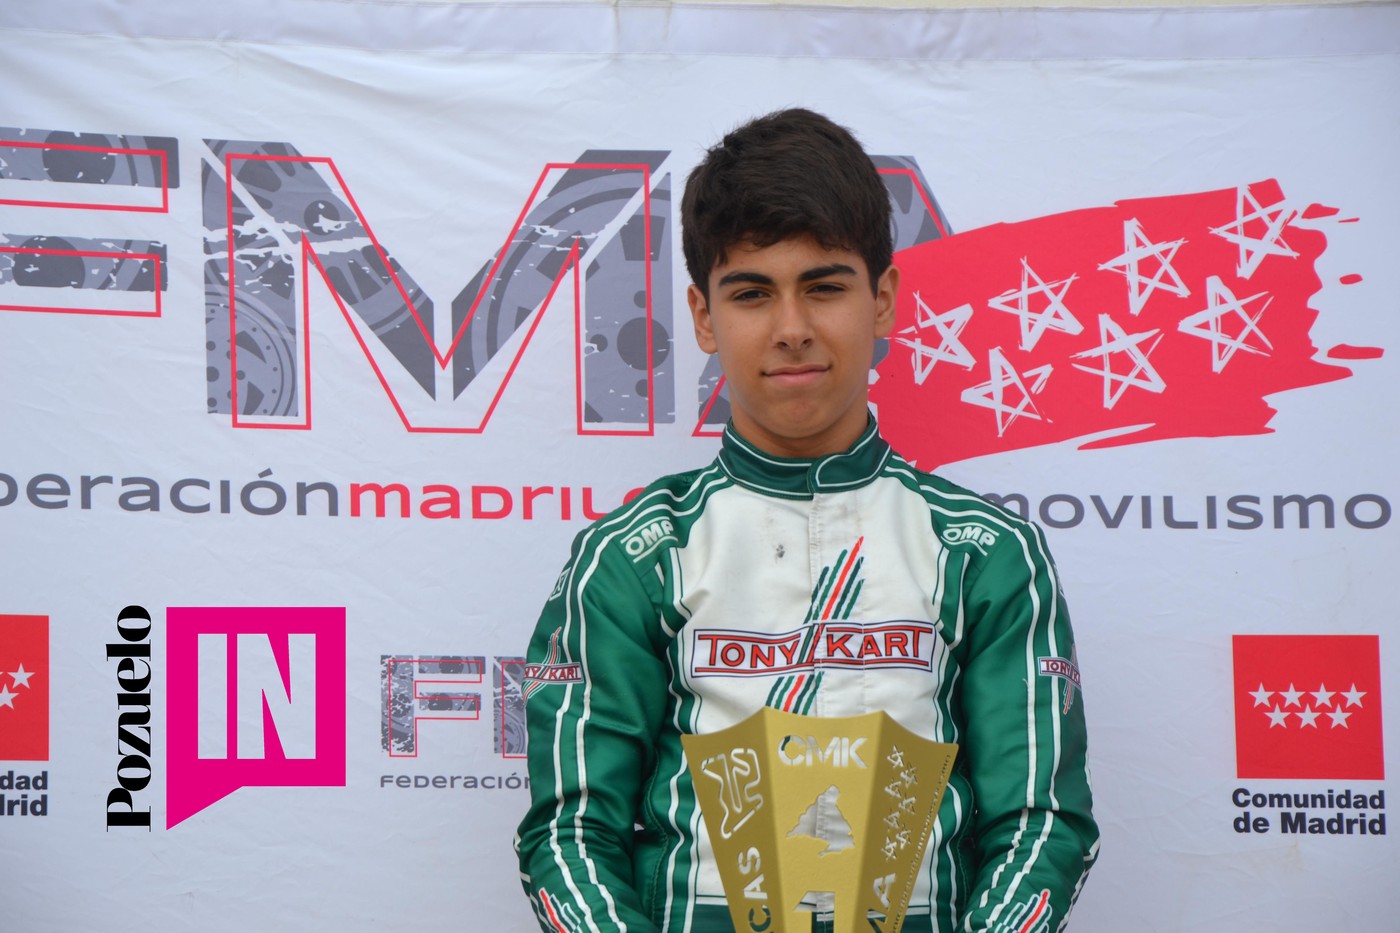 Álvaro Jiménez Campeón Madrileño de Karting